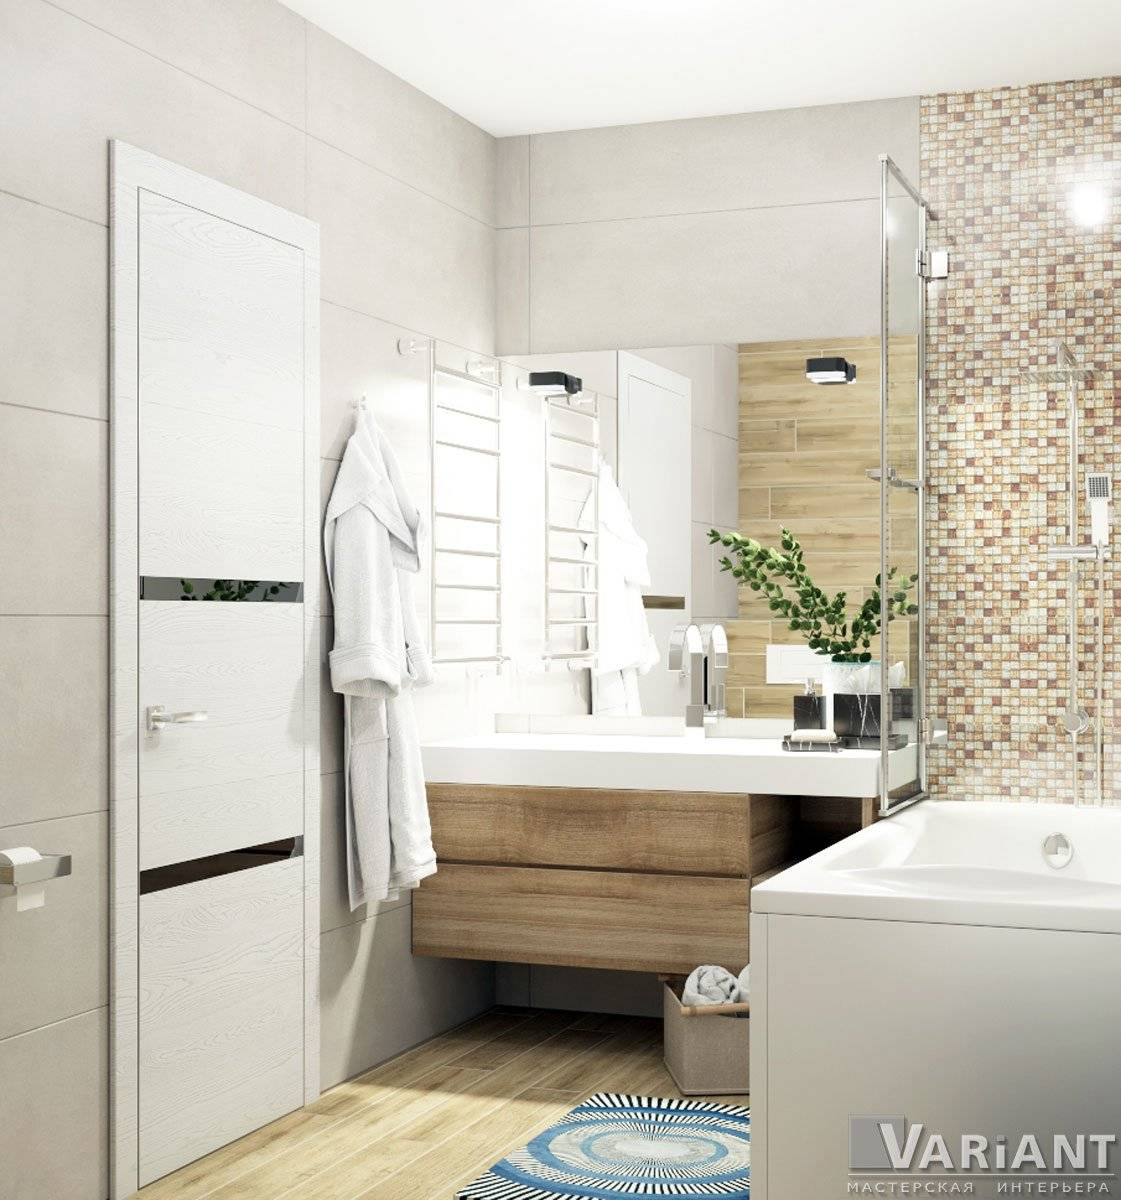 Цвет ванной комнаты: стильные идеи и фотографии интерьера